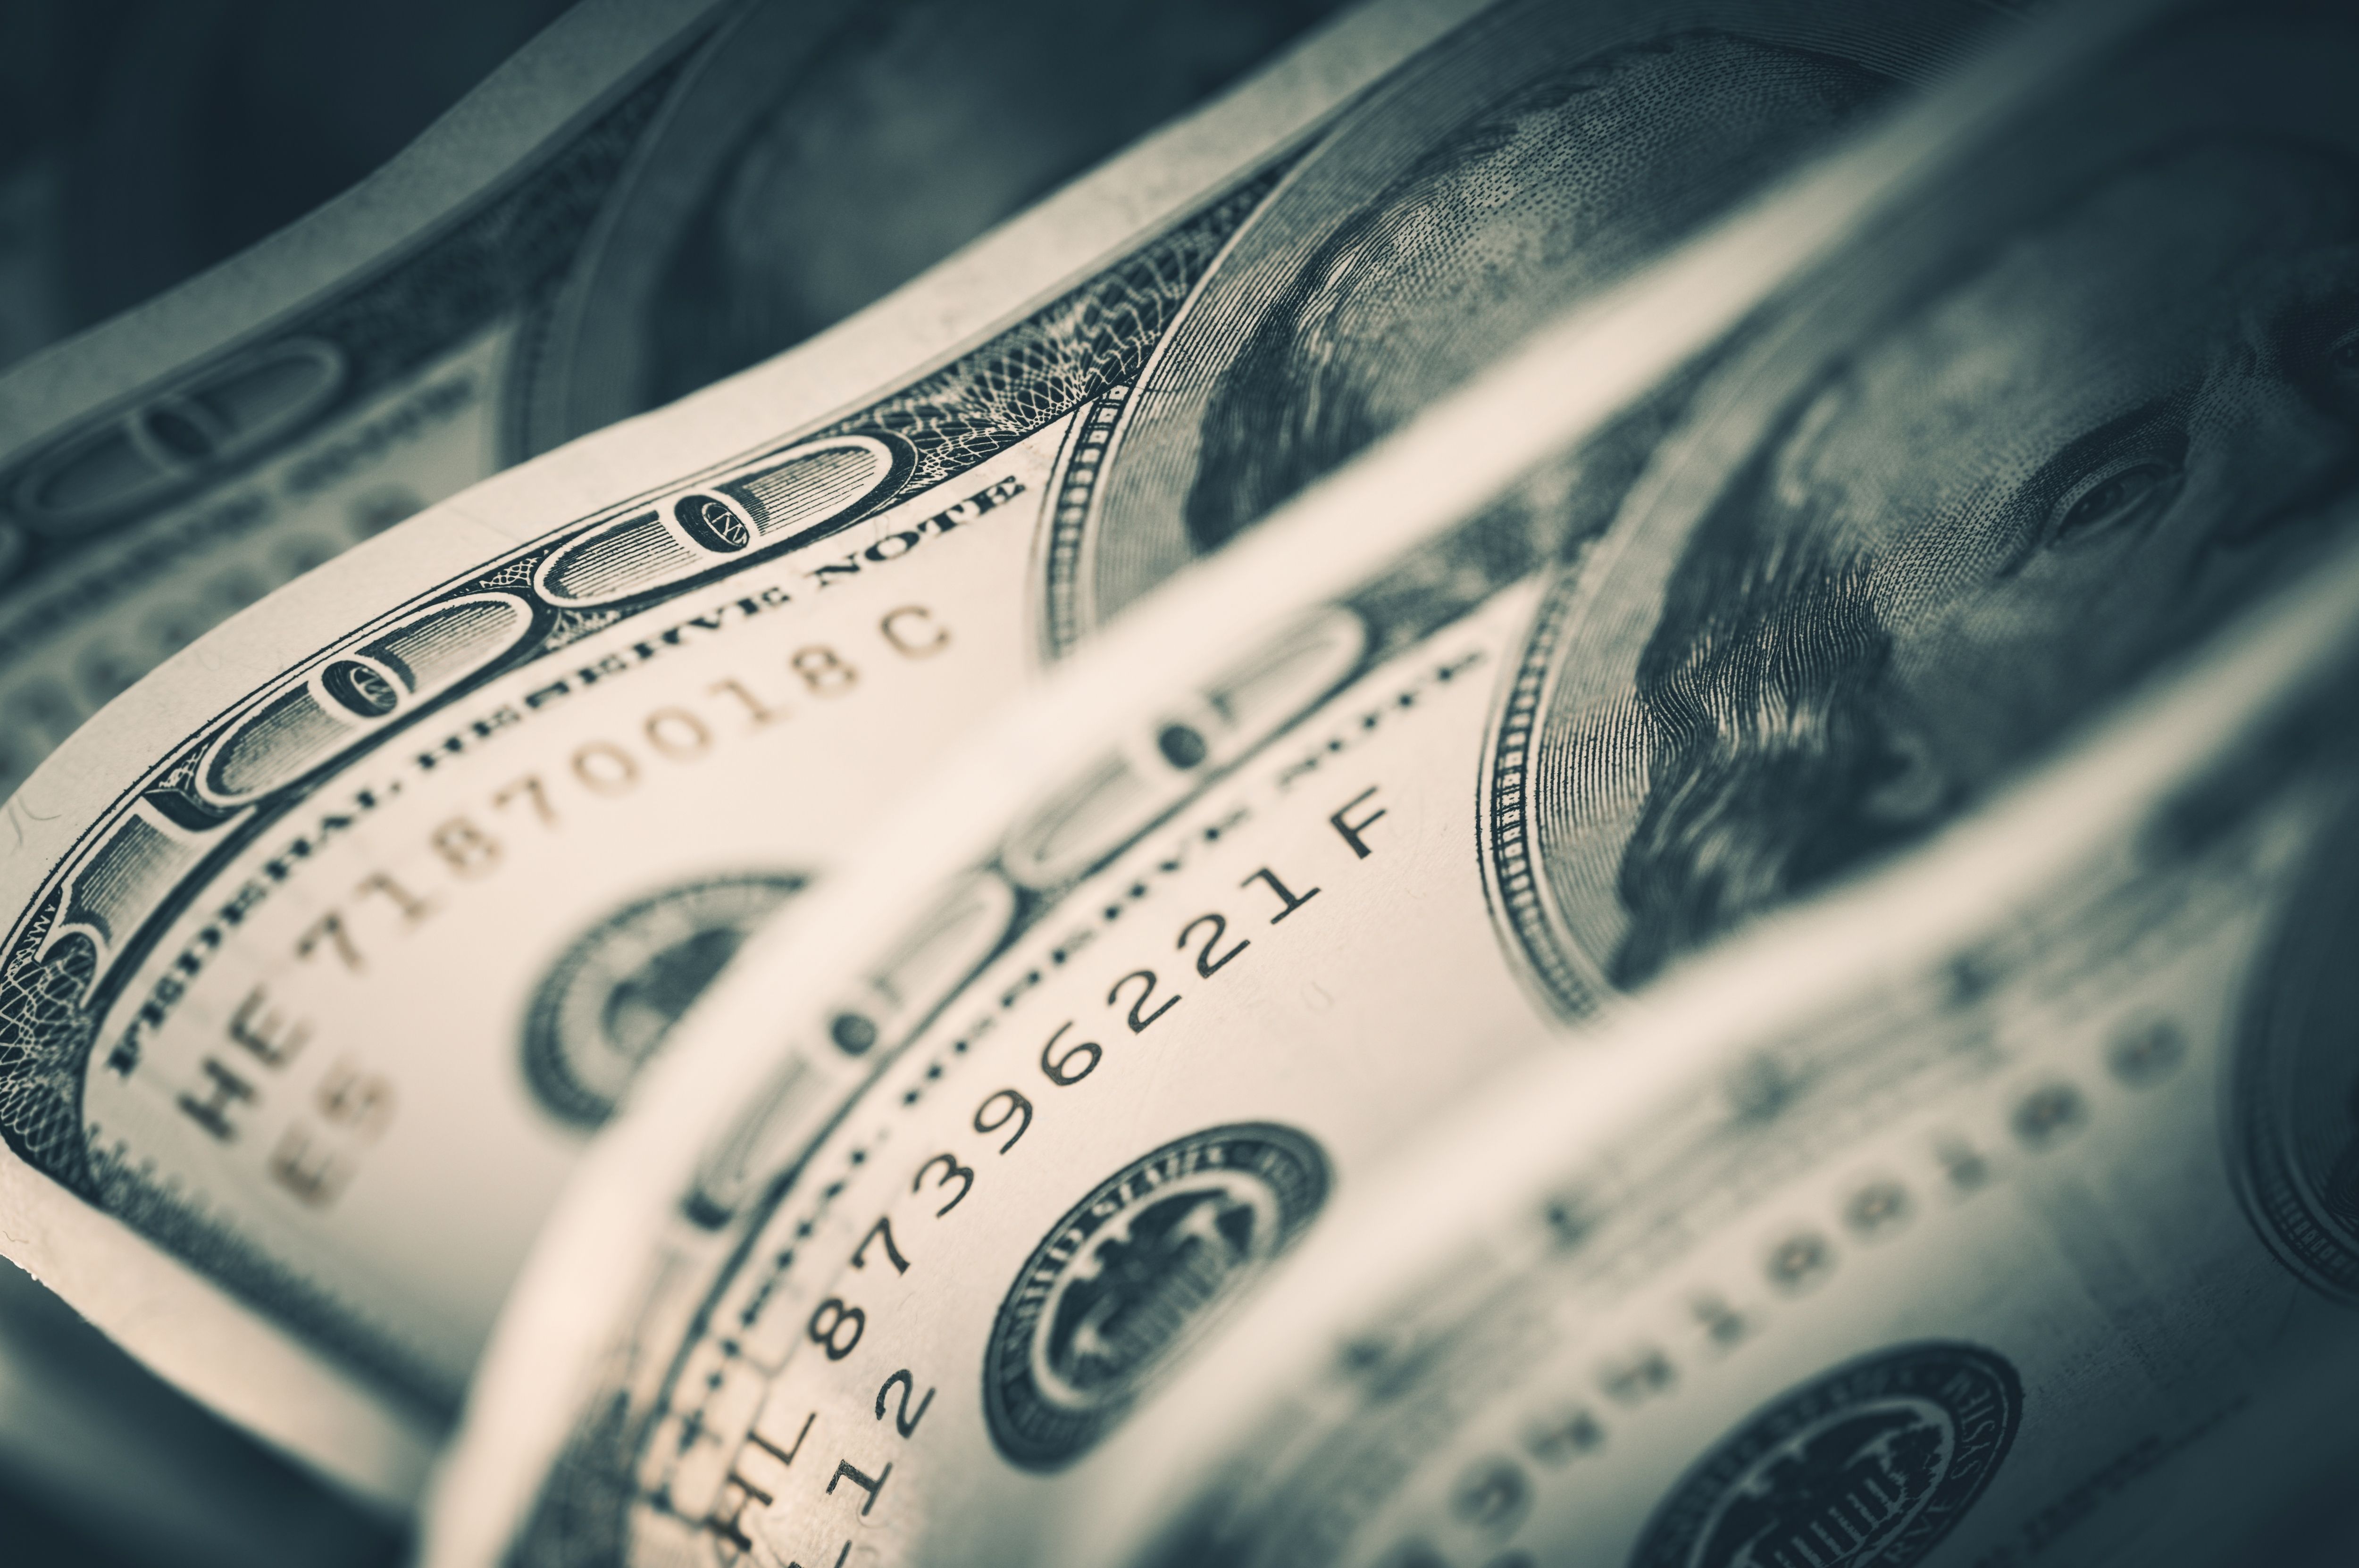 A row of $100 bills. | Source: Shutterstock 